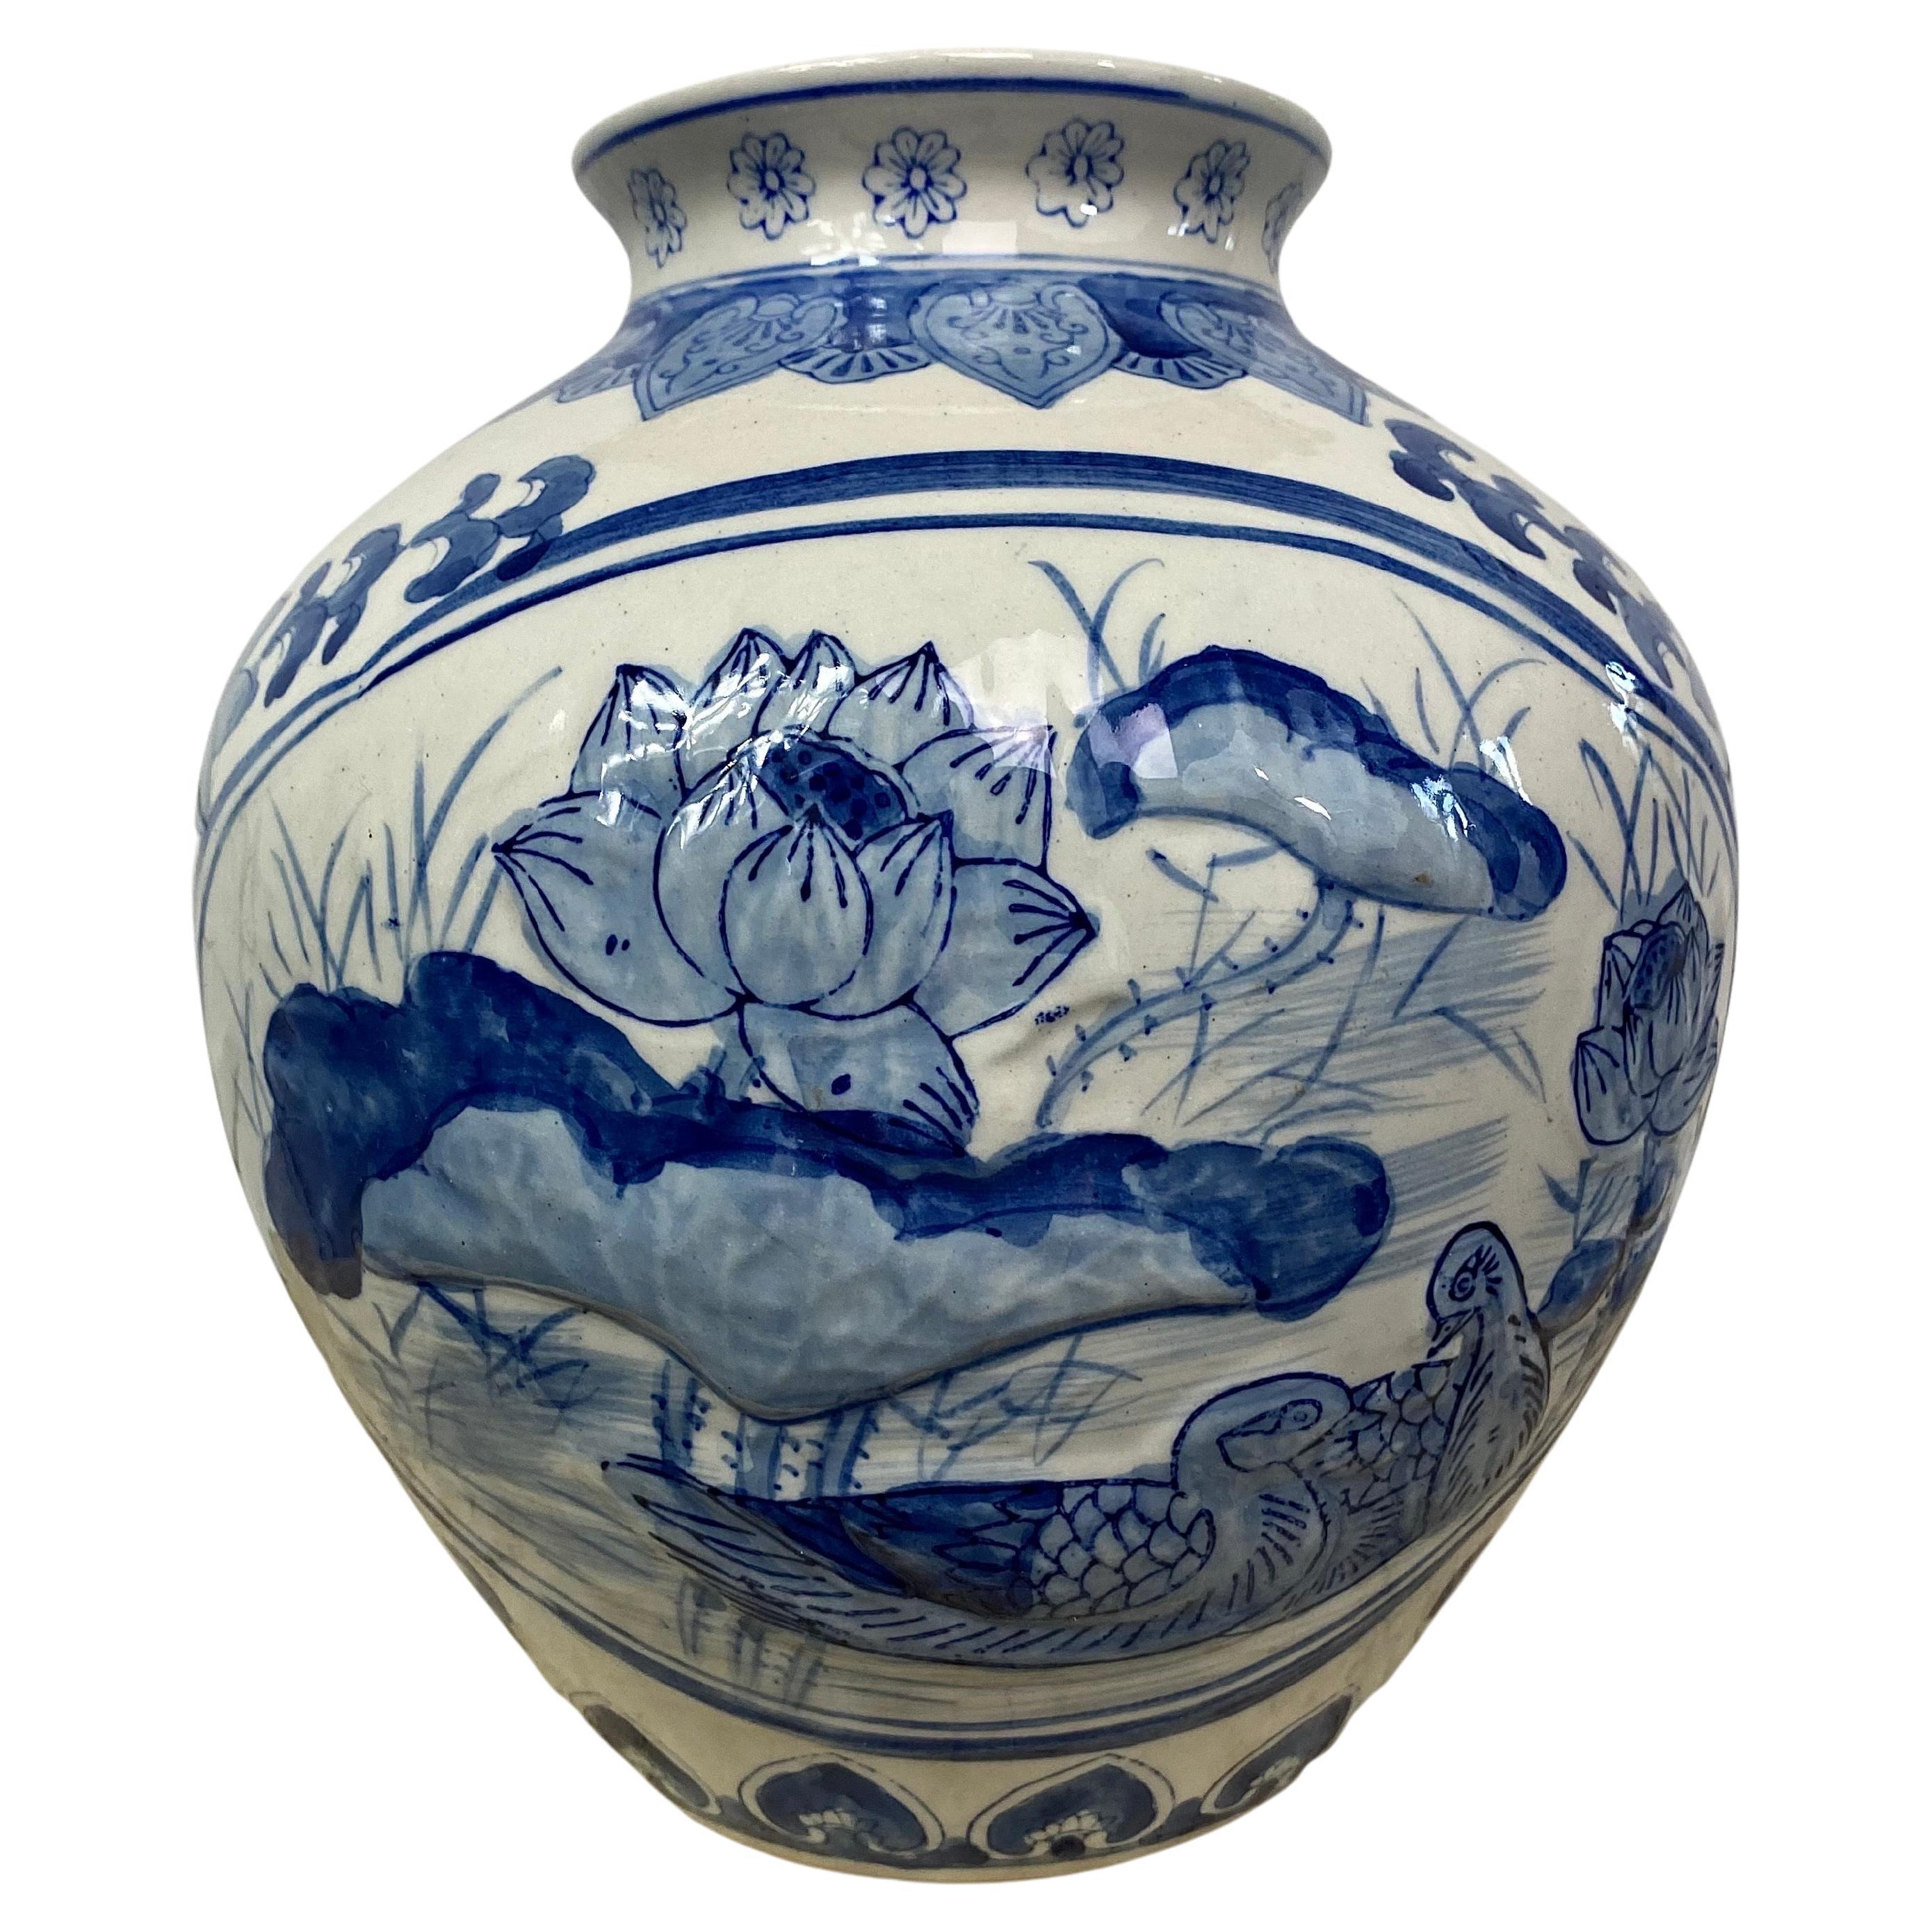 Blau-weiße chinesische Porzellanvase mit Lotusblumen verziert